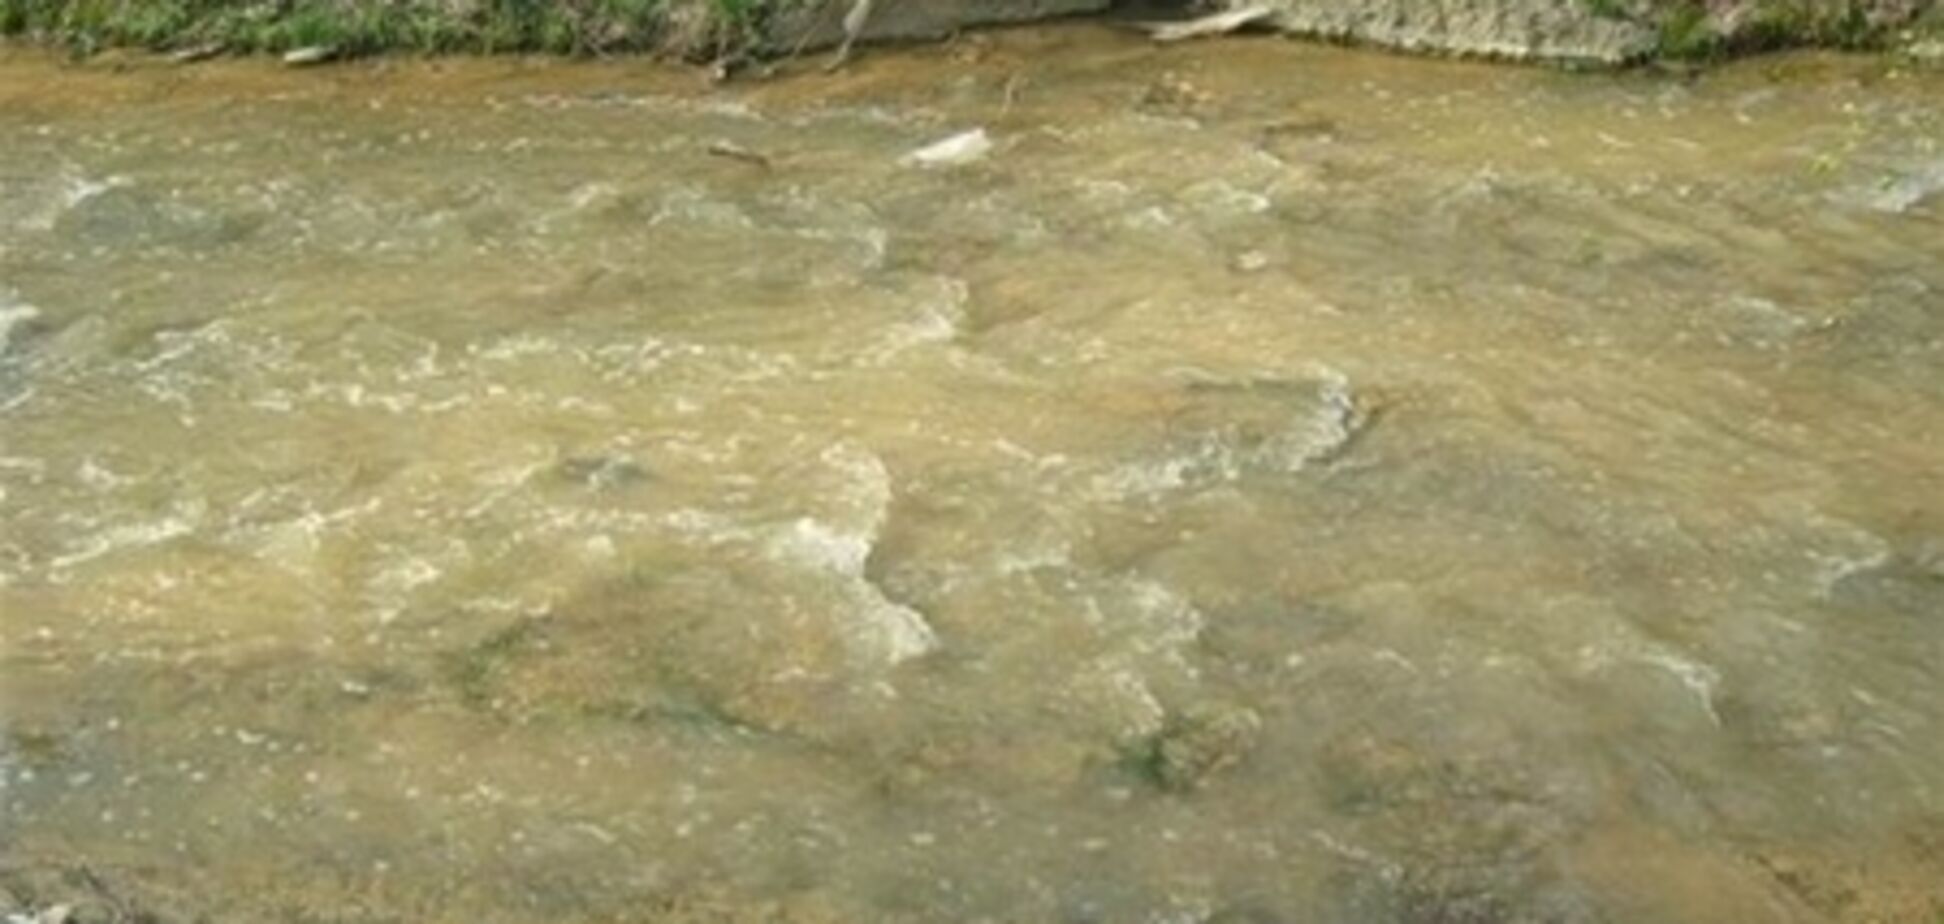 НП під Одесою: близько 100 тонн фекалій потрапили в річку